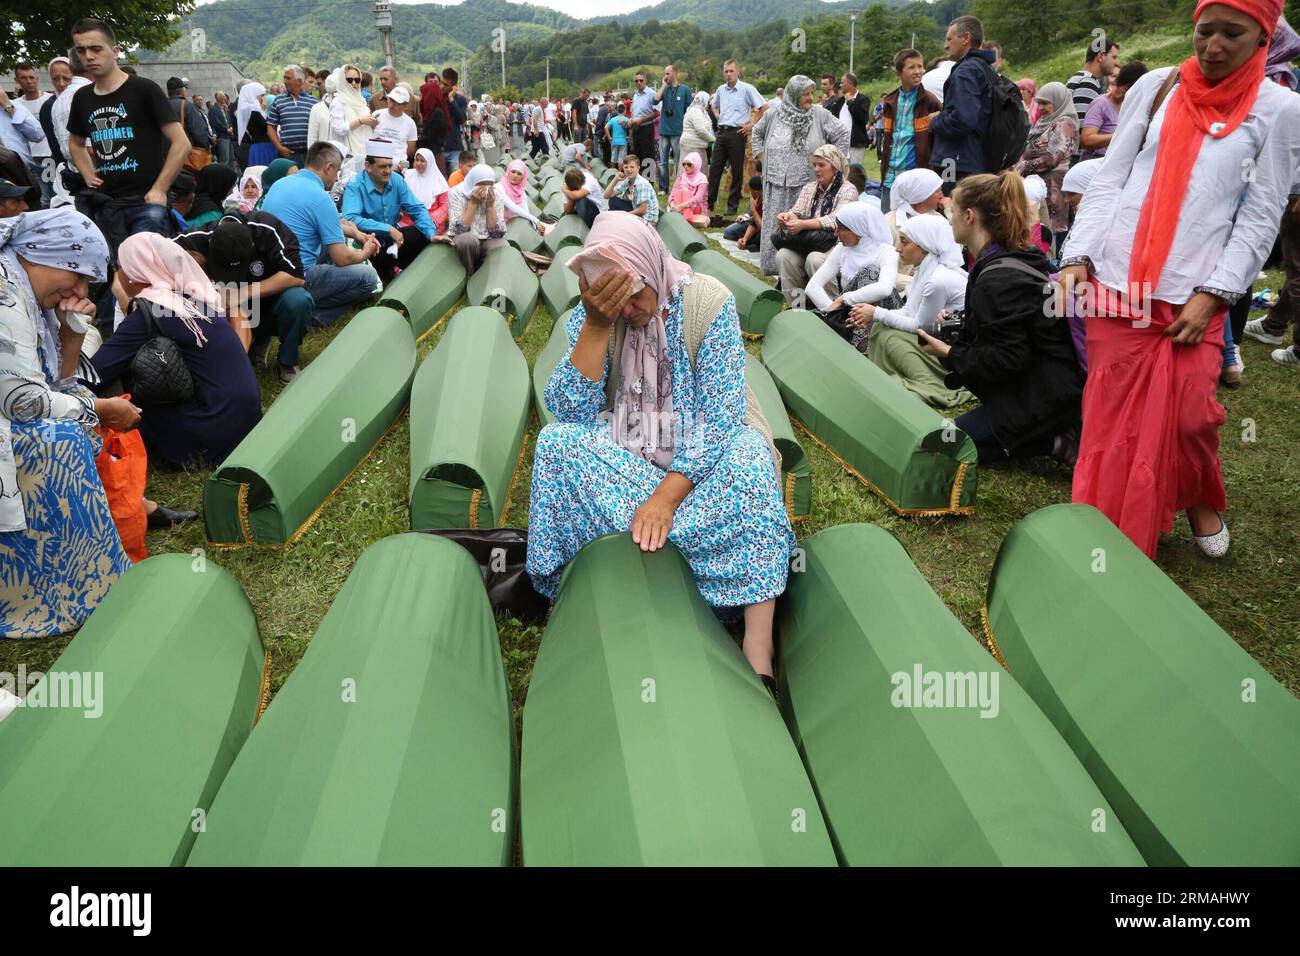 Verwandte, die neben Särgen der Opfer sitzen, trauern vor einer Beerdigung in Potocari, in der Nähe von Srebrenica, Bosnien und Herzegowina, 11. Juli 2014. Die Beerdigung von 175 kürzlich identifizierten Opfern fand hier am Freitag zum Gedenken an den 19. Jahrestag des Massakers von Srebrenica statt. Etwa 7.000 muslimische Männer und Jungen wurden im Juli 1995 von bosnischen serbischen Truppen in Srebrenica und in der Nähe von Srebrenica massakriert, das schlimmste Massaker in Europa seit dem Ende des Zweiten Weltkriegs Xinhua/Haris Memija zjl BIH-SREBRENICA-MASSAKER-19. JAHRESTAG PUBLICATIONxNOTxINxCHN Stockfoto